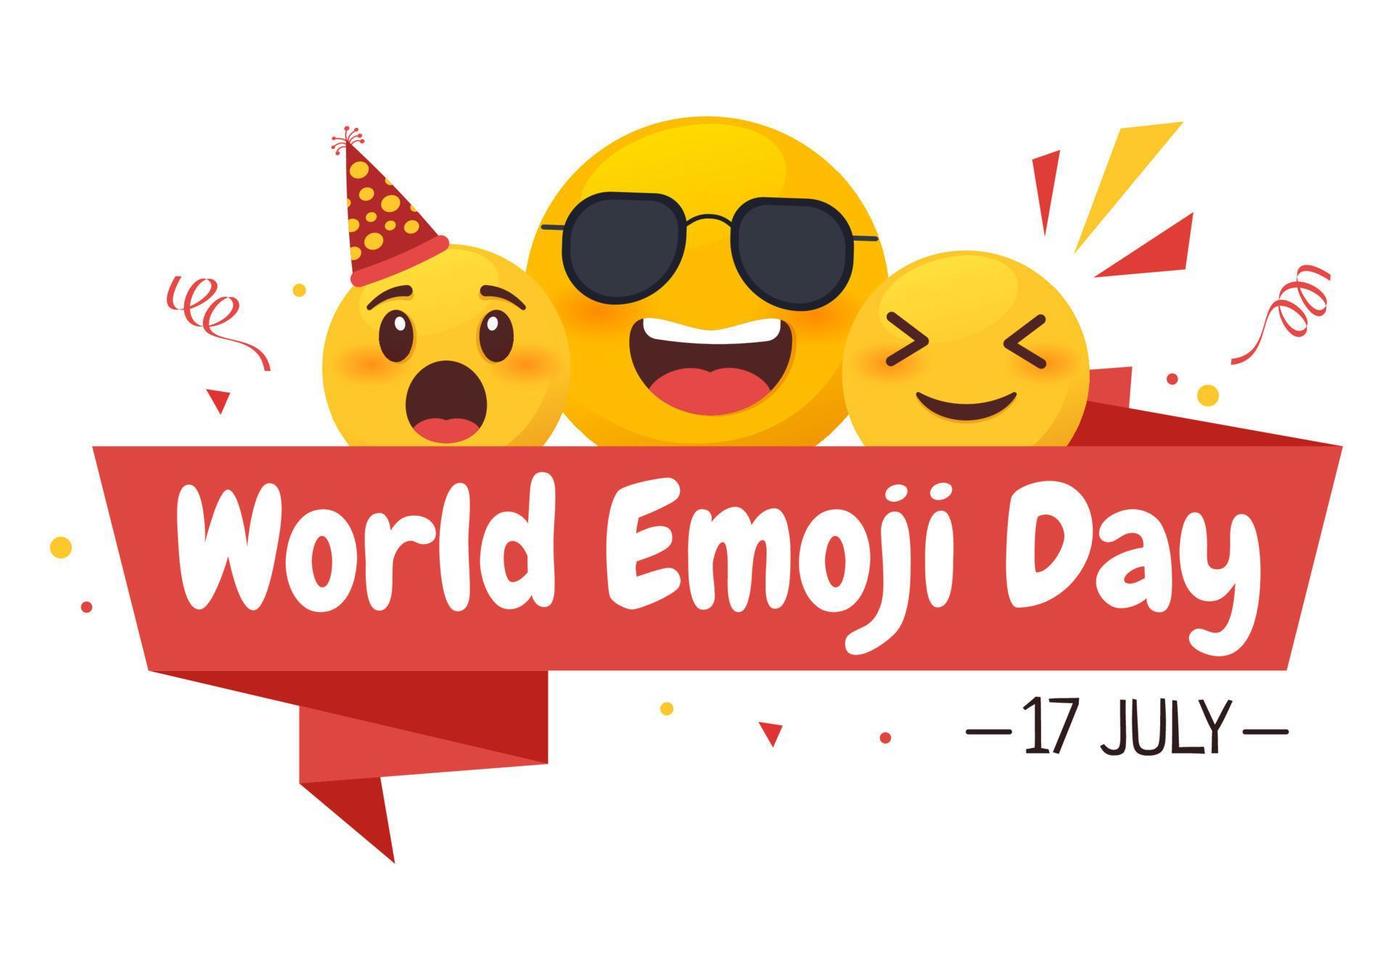 célébration de la journée mondiale des emoji avec des événements et des sorties de produits dans différentes expressions faciales sous forme de dessin animé mignon en illustration de fond plat vecteur